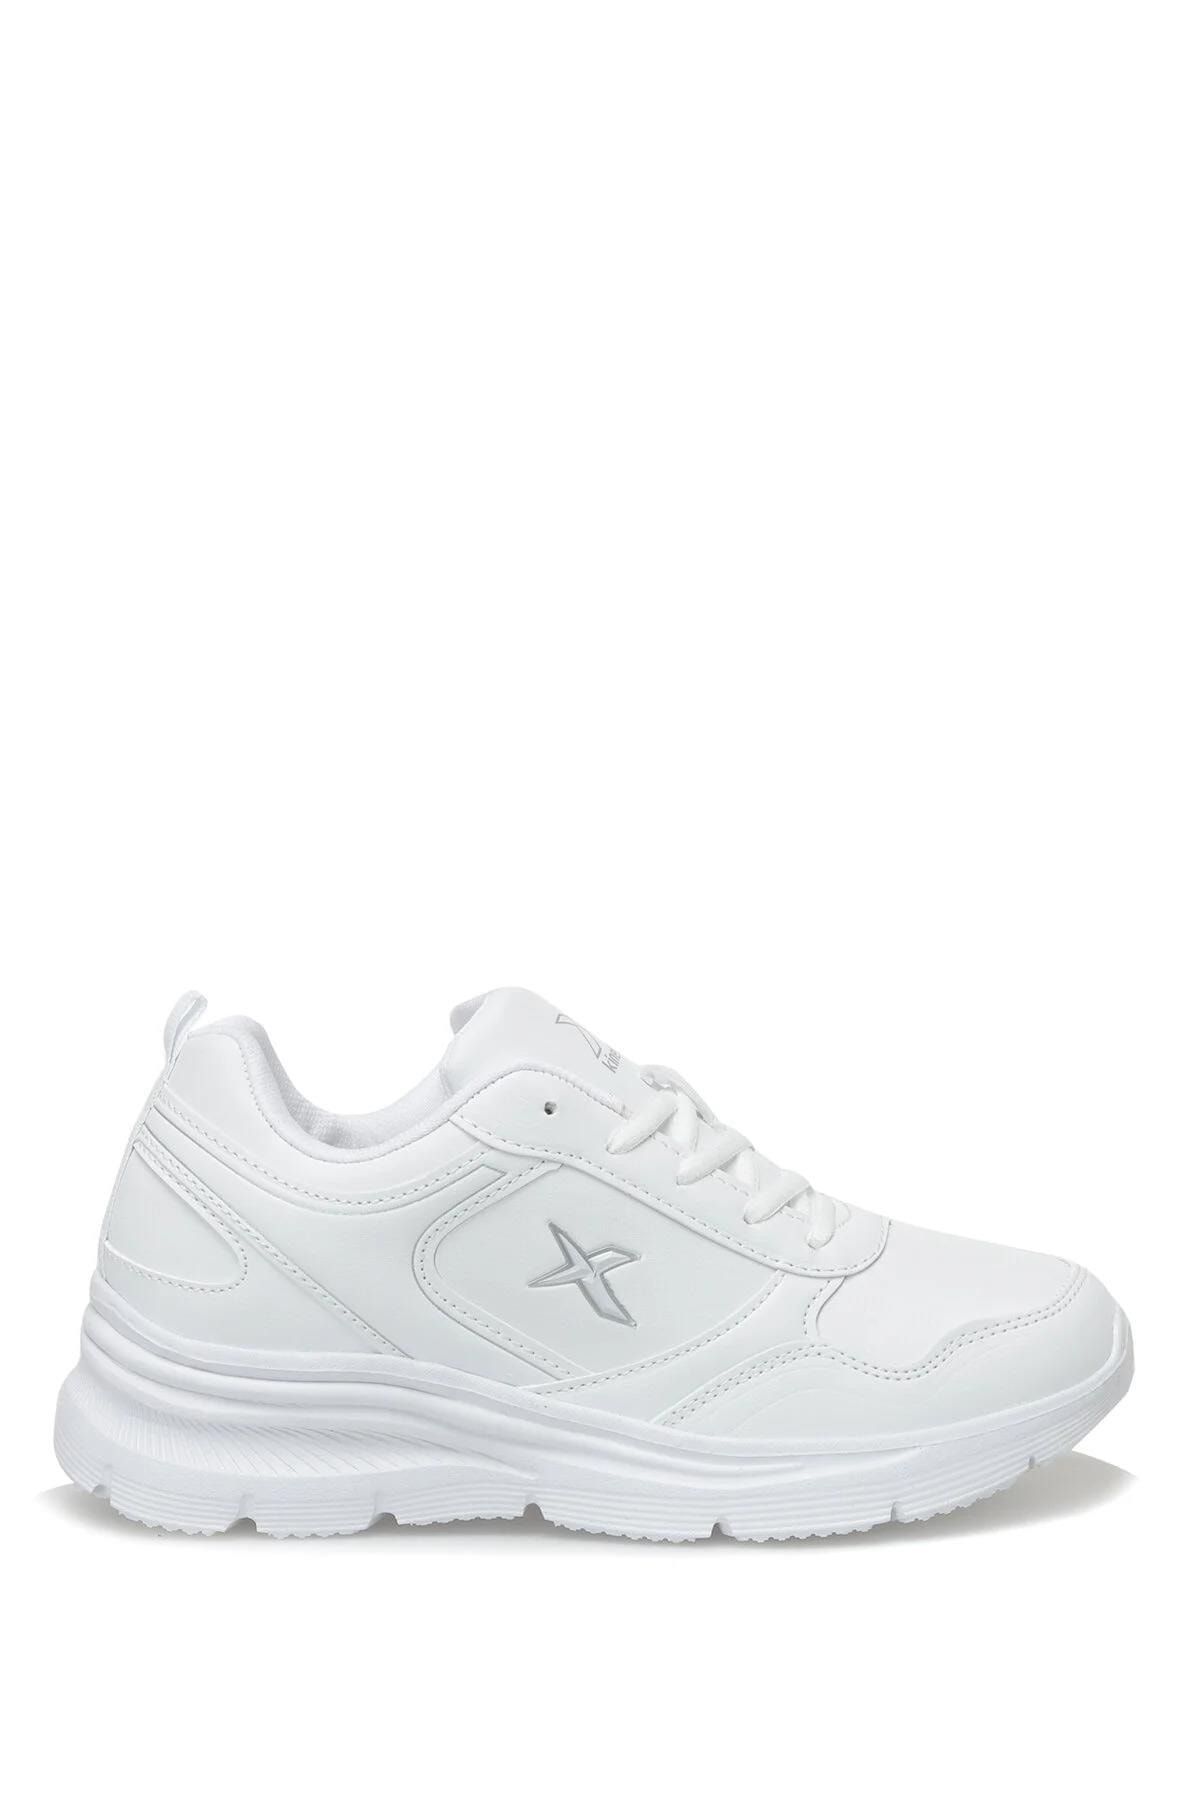 Kinetix Suomy Pu W 3fx Beyaz Kadın Sneaker 101335974